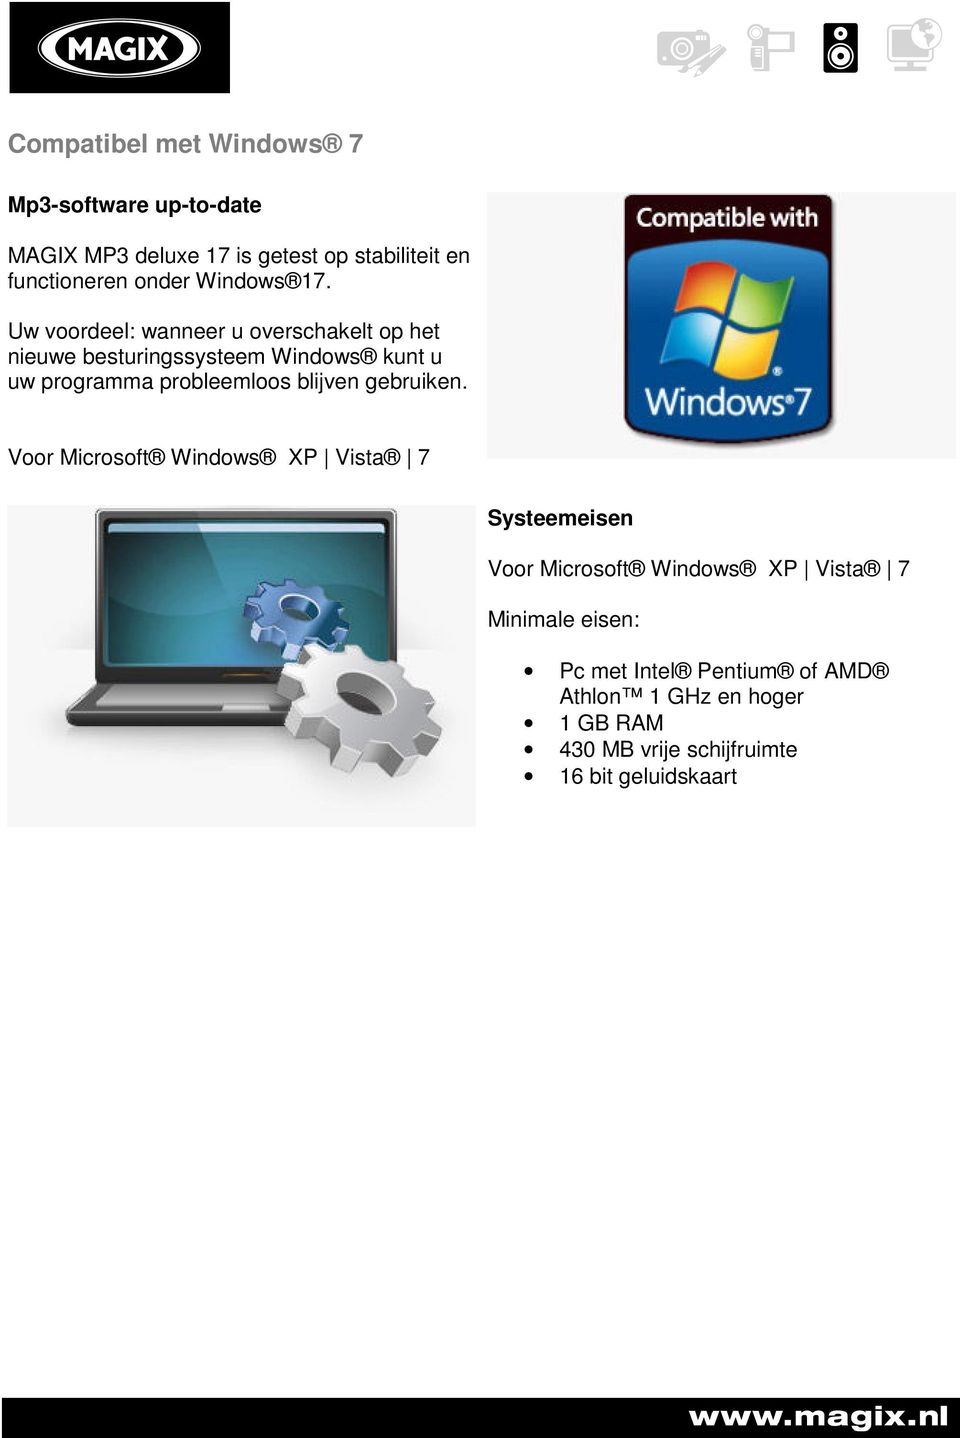 Uw voordeel: wanneer u overschakelt op het nieuwe besturingssysteem Windows kunt u uw programma probleemloos